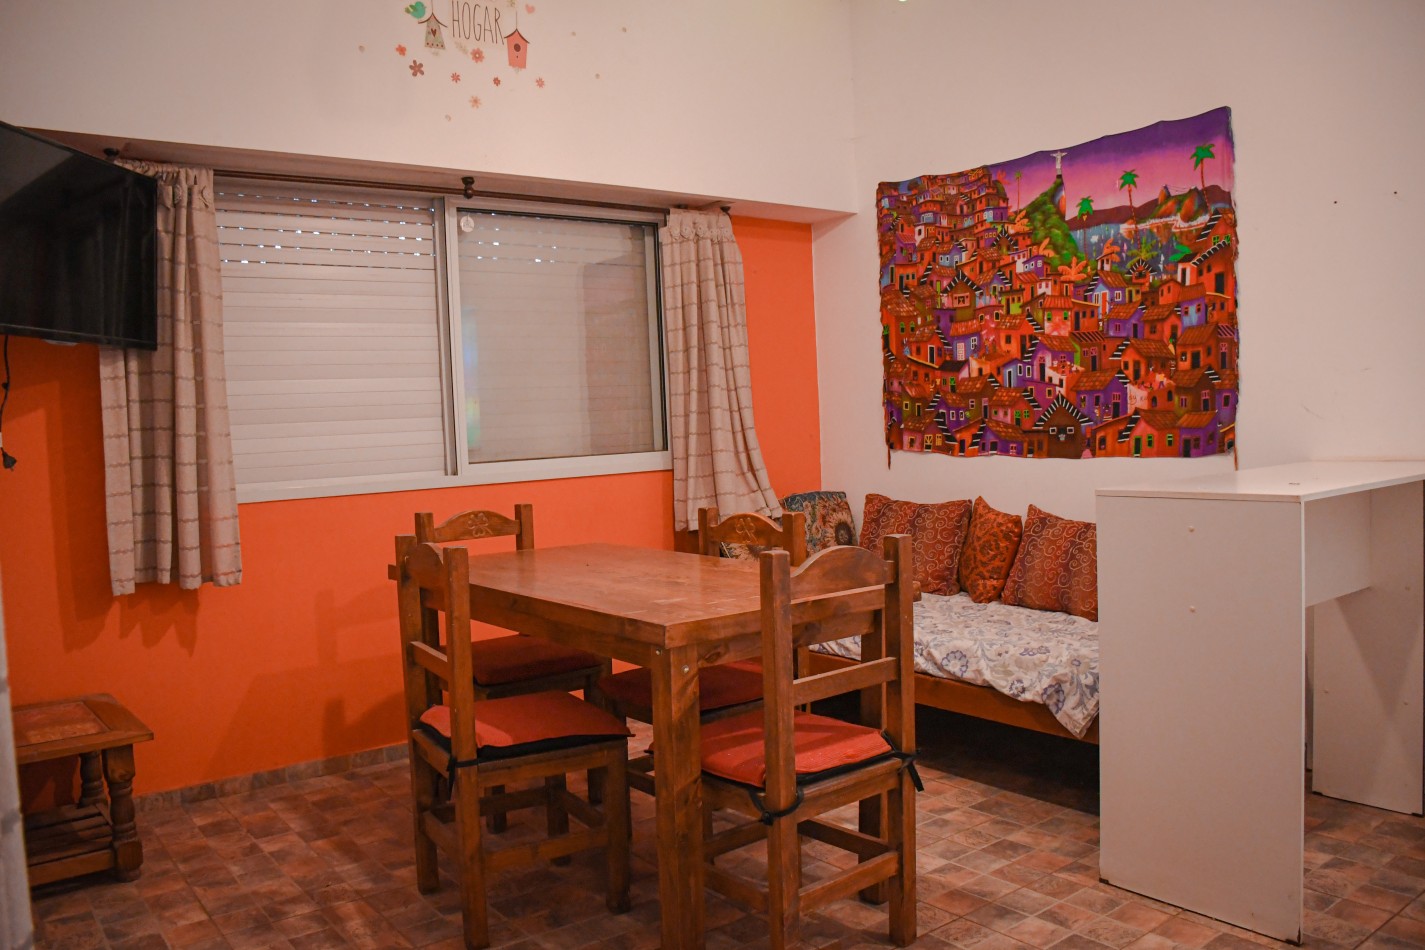 Casa 1 Dormitorio - Los Nogales - Alvarez